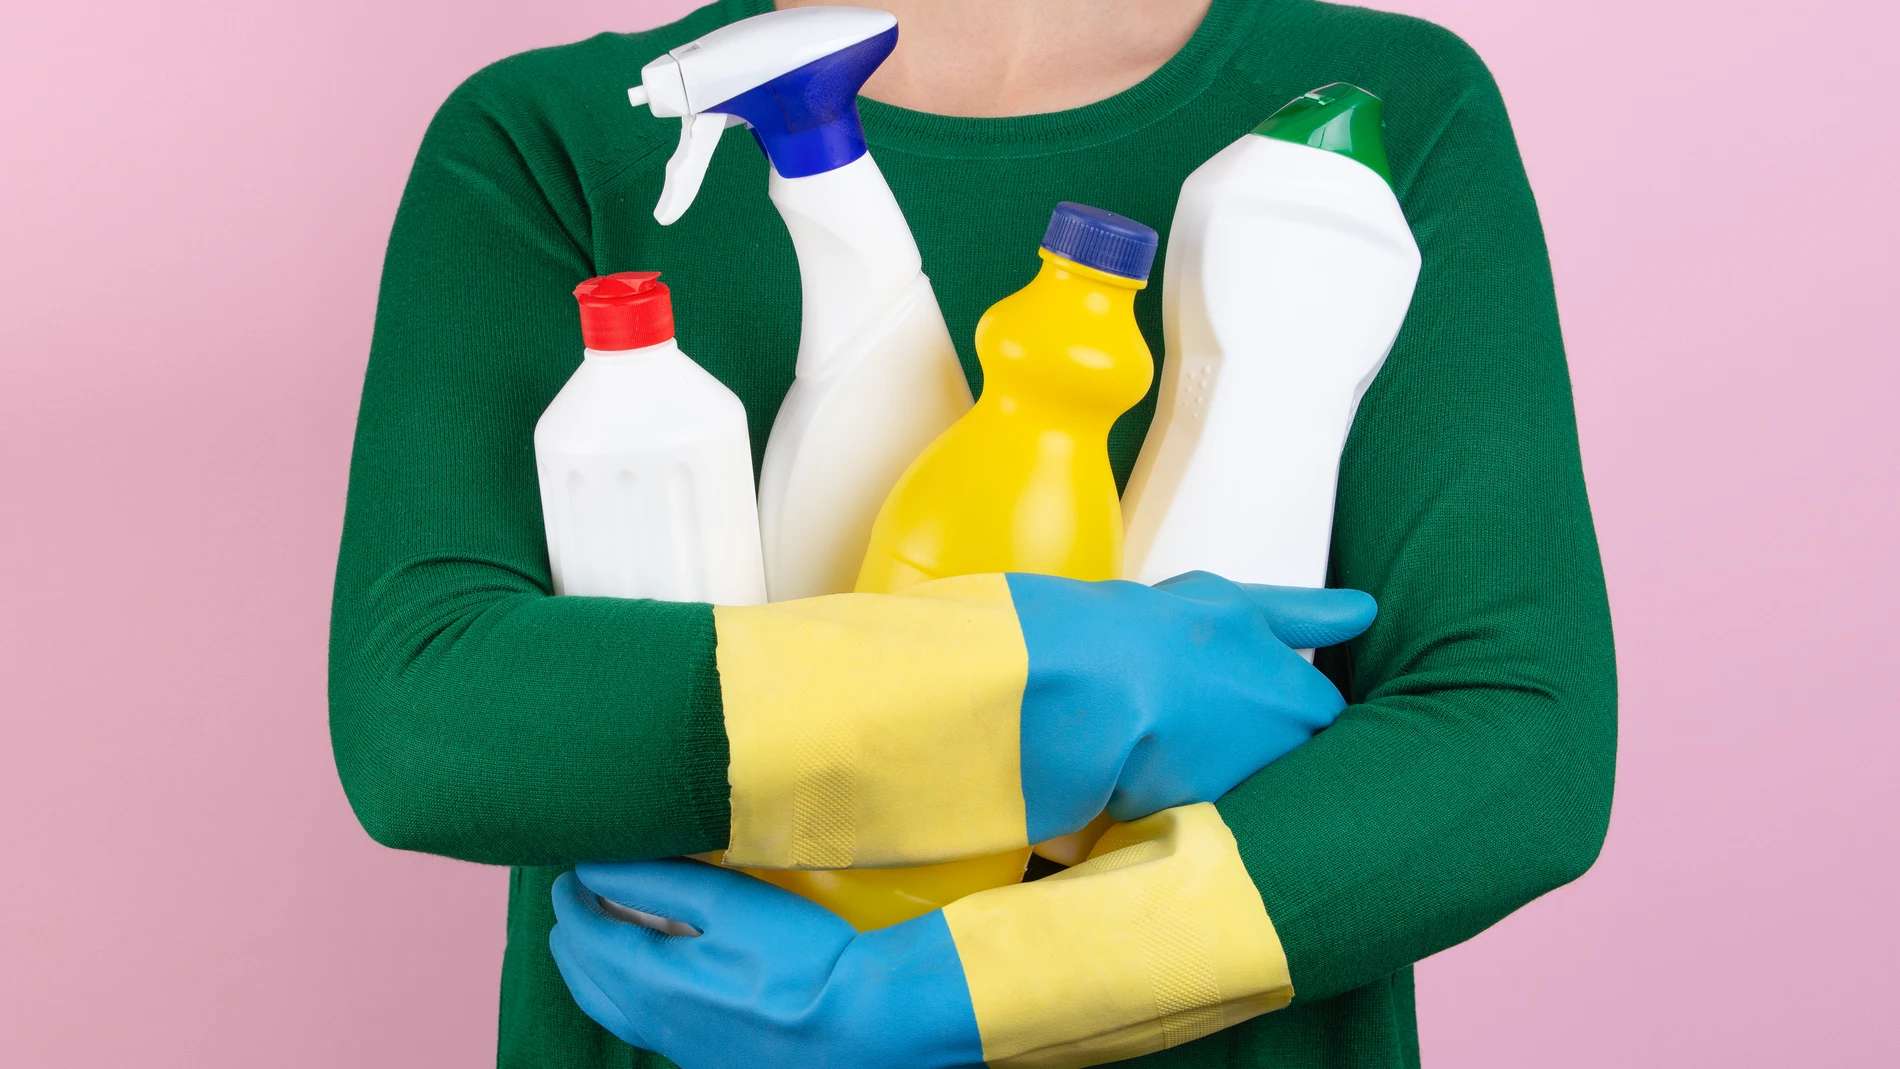 Estos son los productos de limpieza más tóxicos y peligrosos